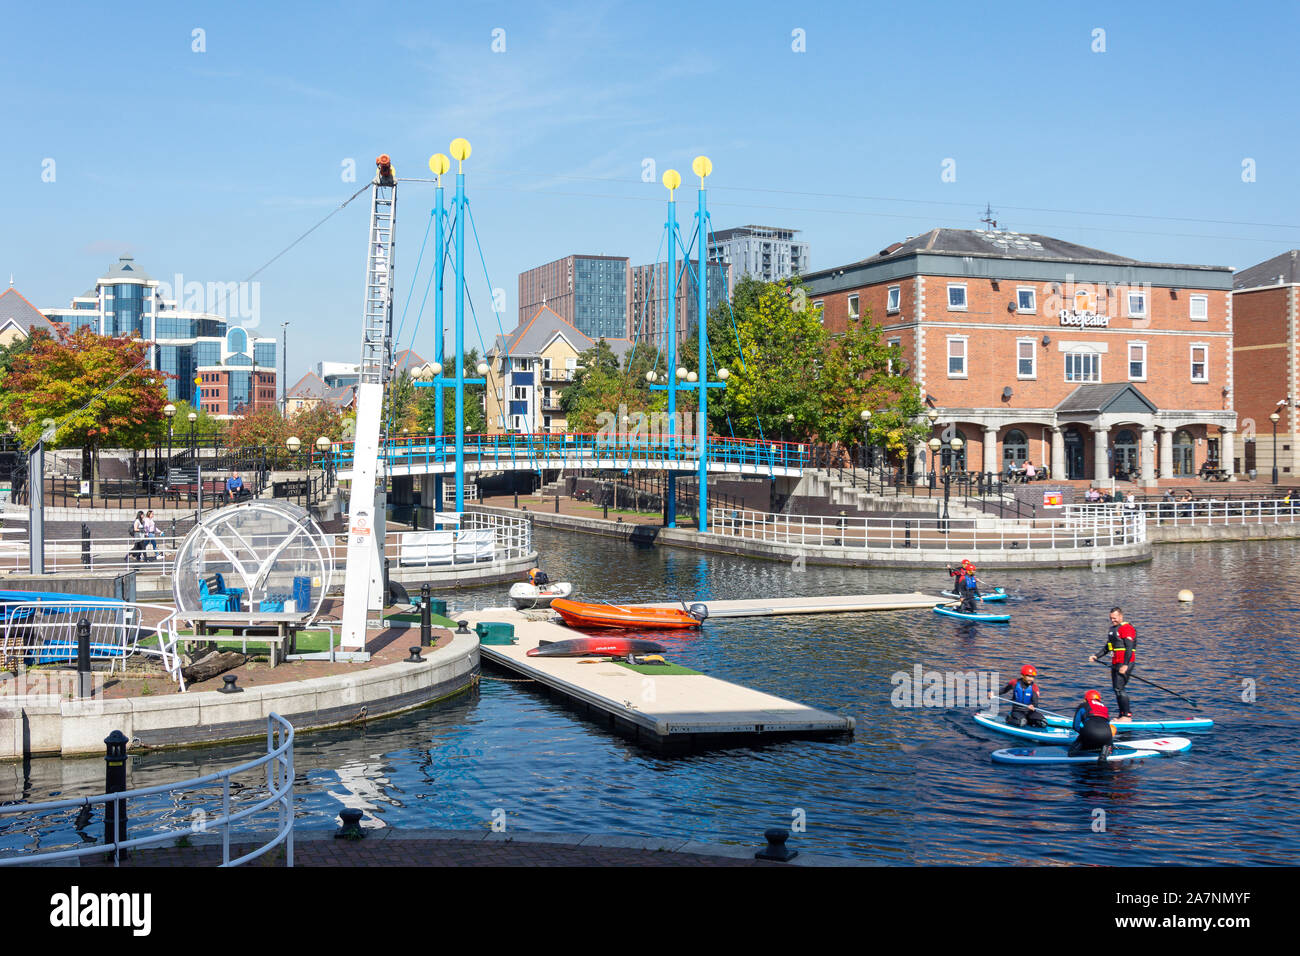 Centro di sport acquatici, Ontario bacino, Salford Quays, Salford, Greater Manchester, Inghilterra, Regno Unito Foto Stock